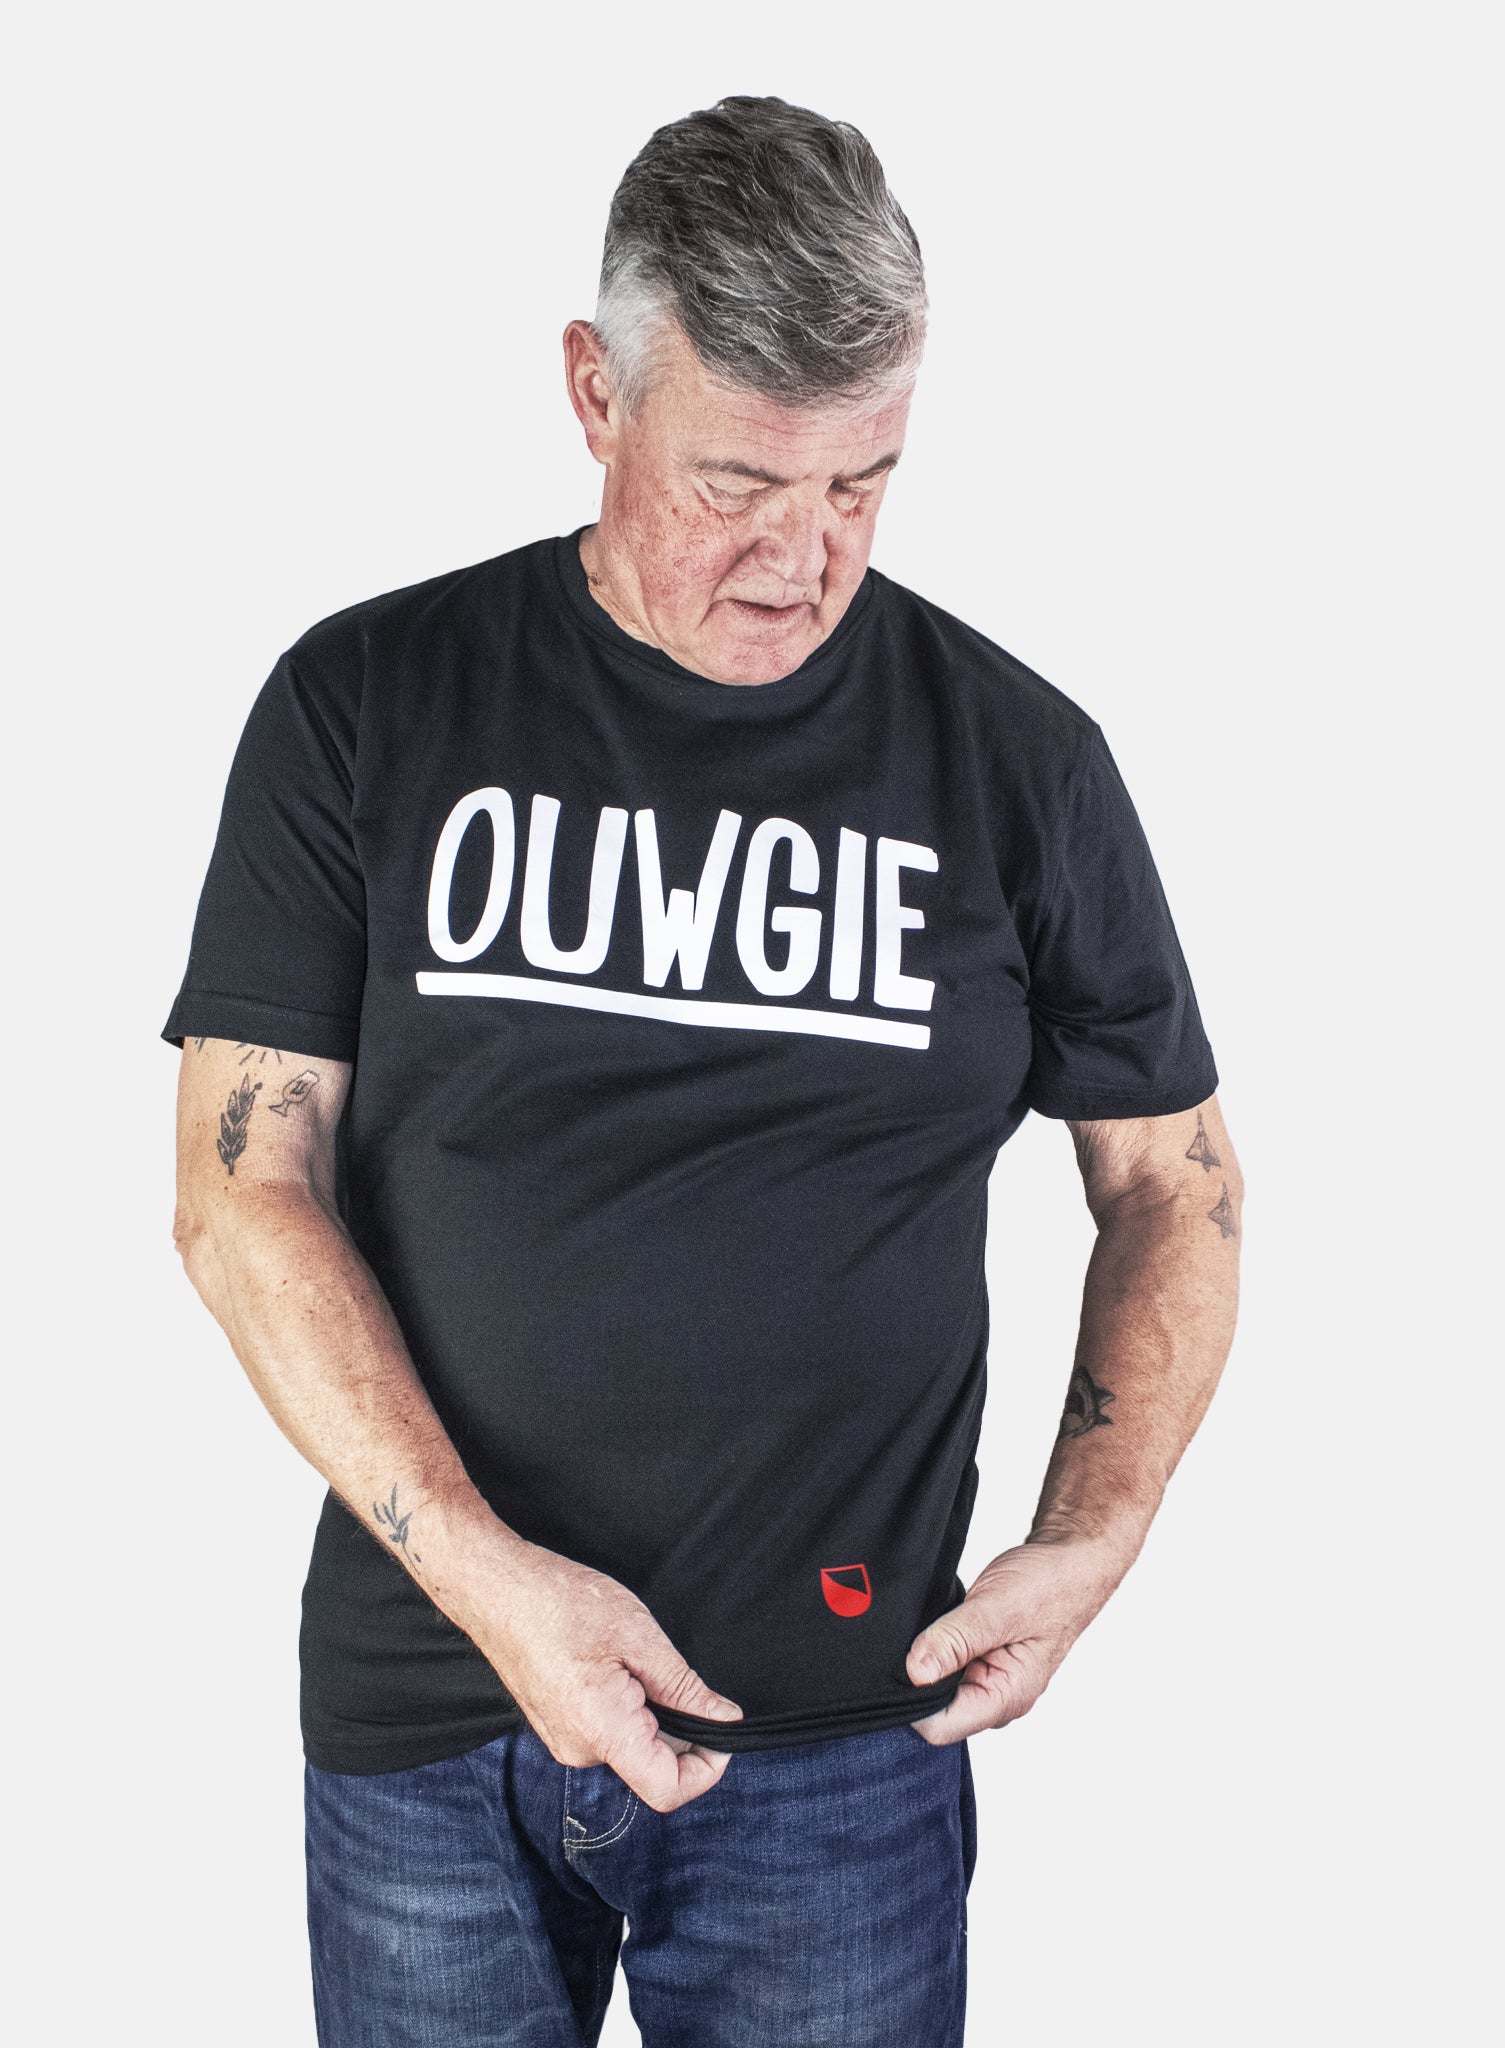 'OUWGIE' SHIRT